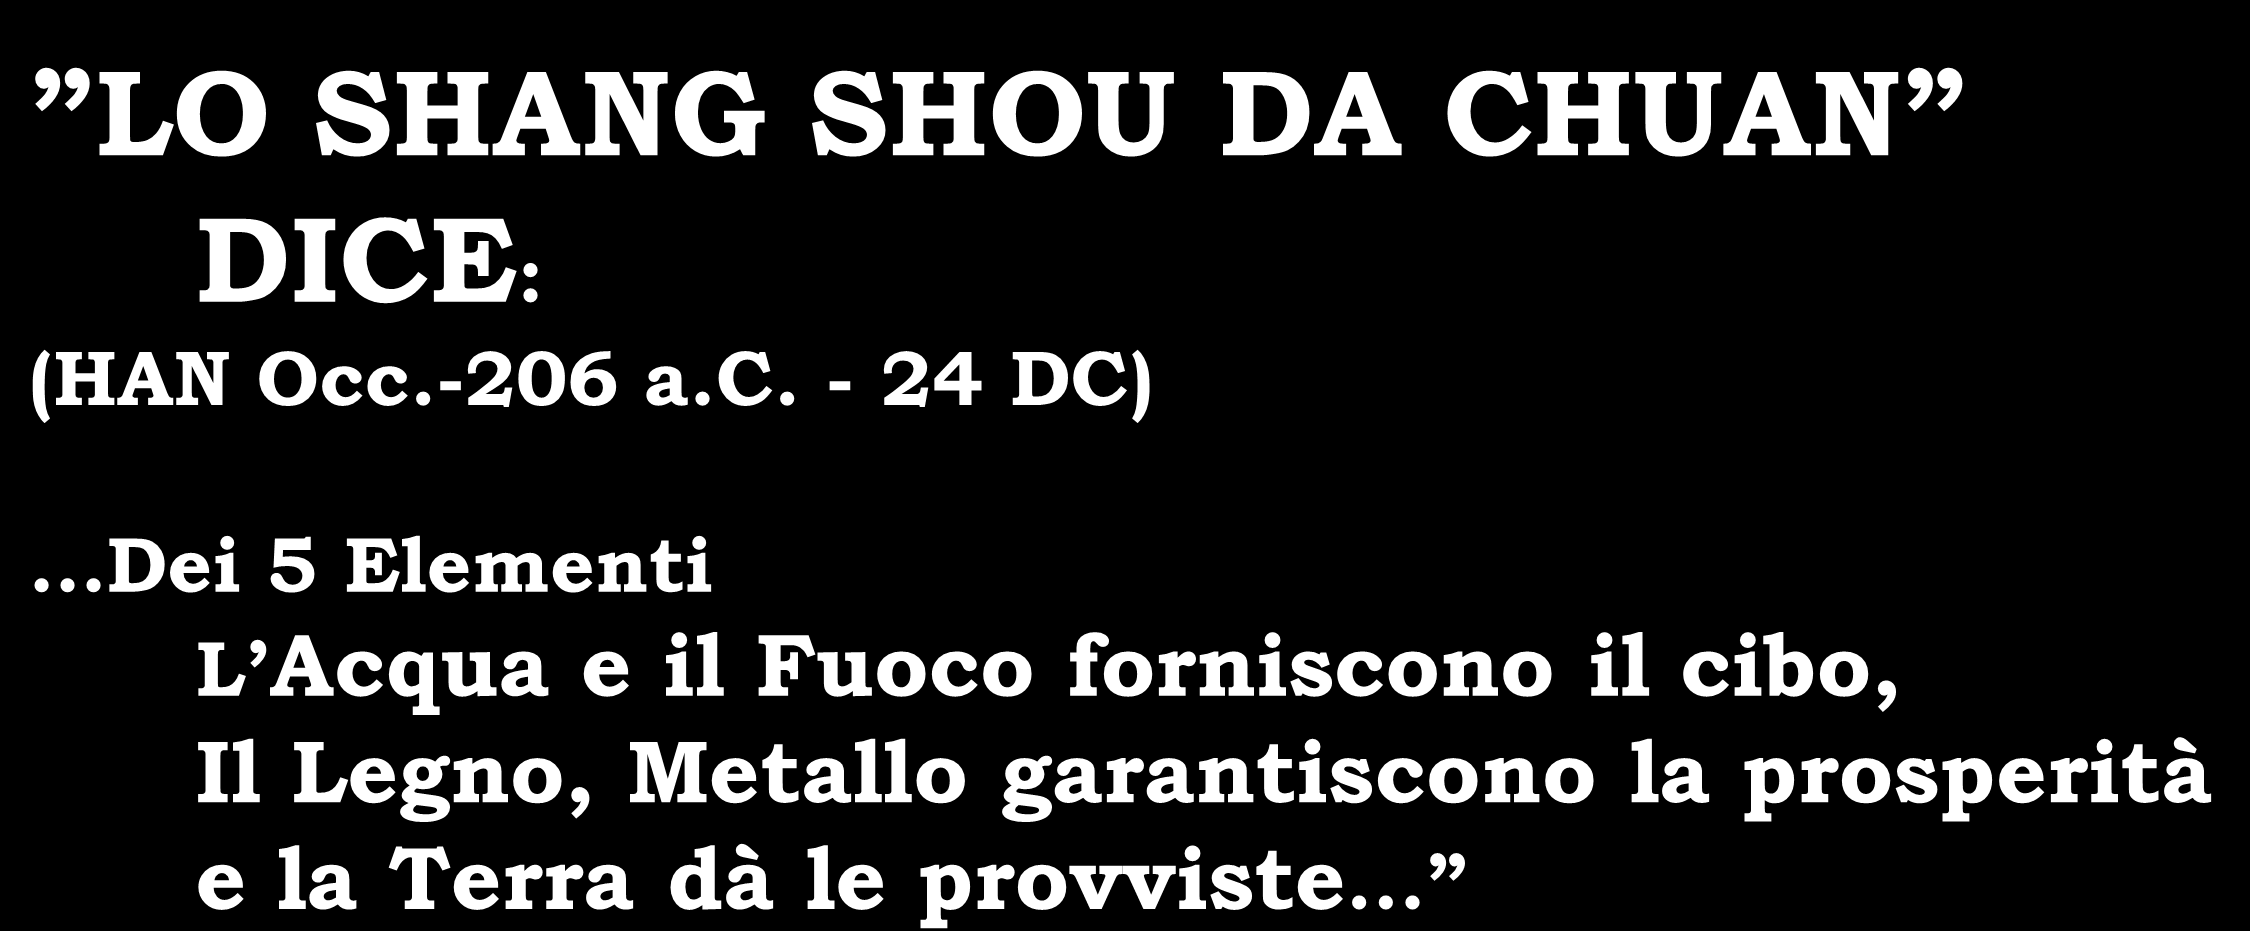 LO SHANG SHOU DA CHUAN DICE: (HAN Occ